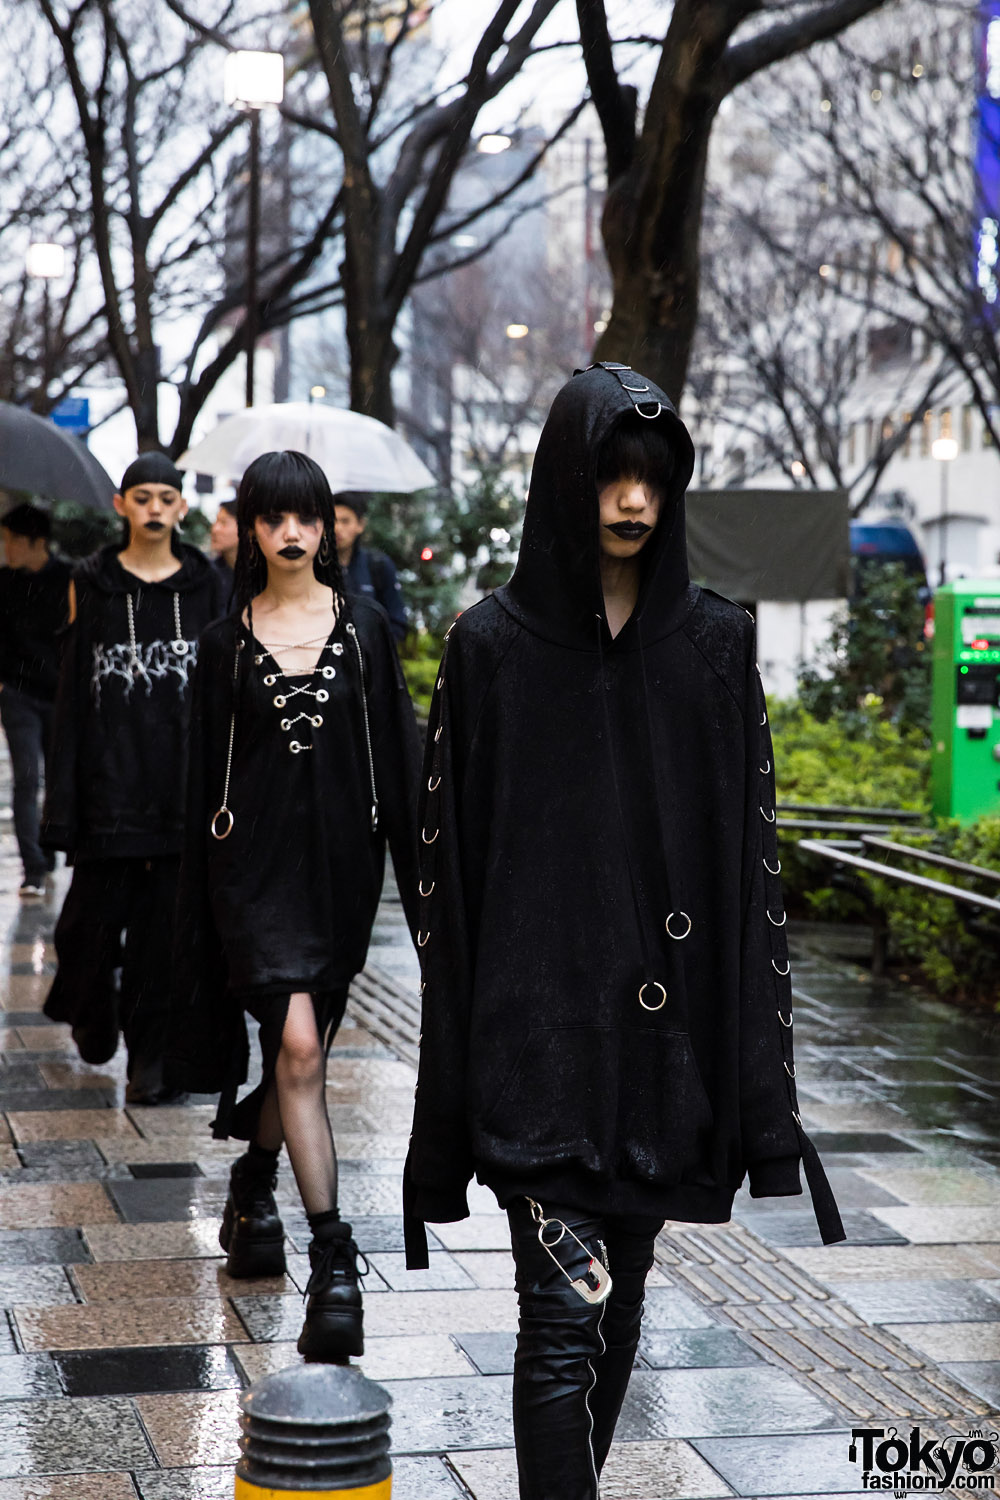 BERCERK “Dirty City” – Japanese Fashion Brand’s Dark Harajuku Street